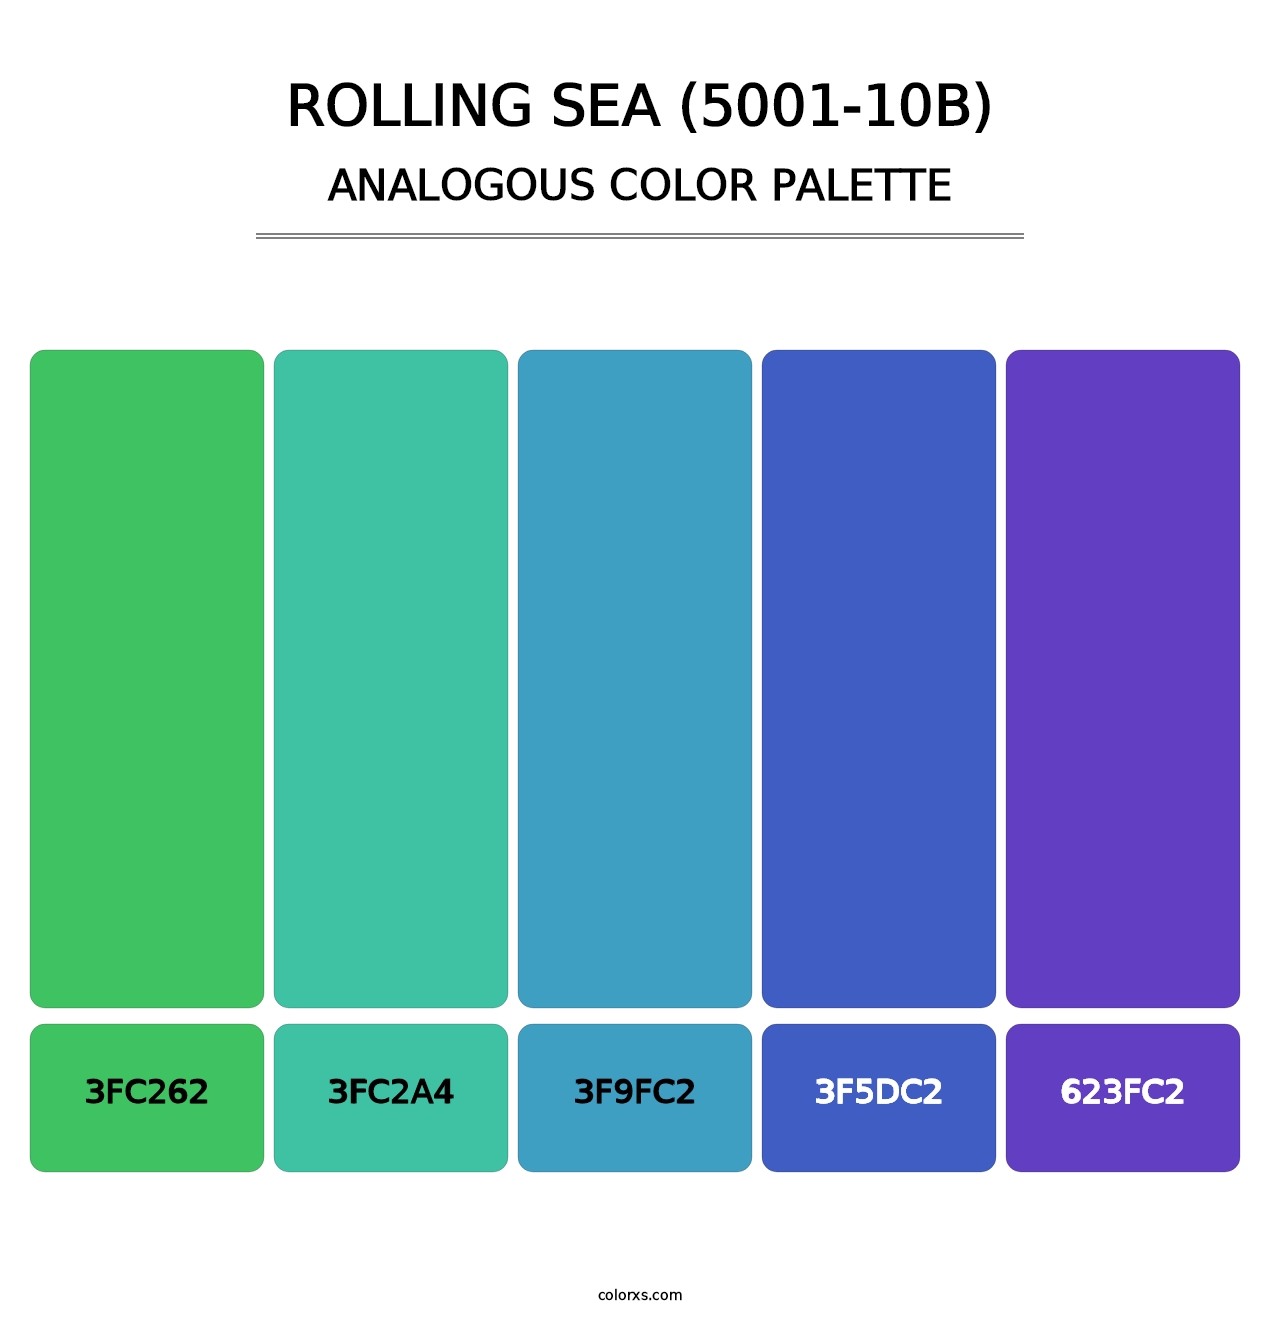 Rolling Sea (5001-10B) - Analogous Color Palette